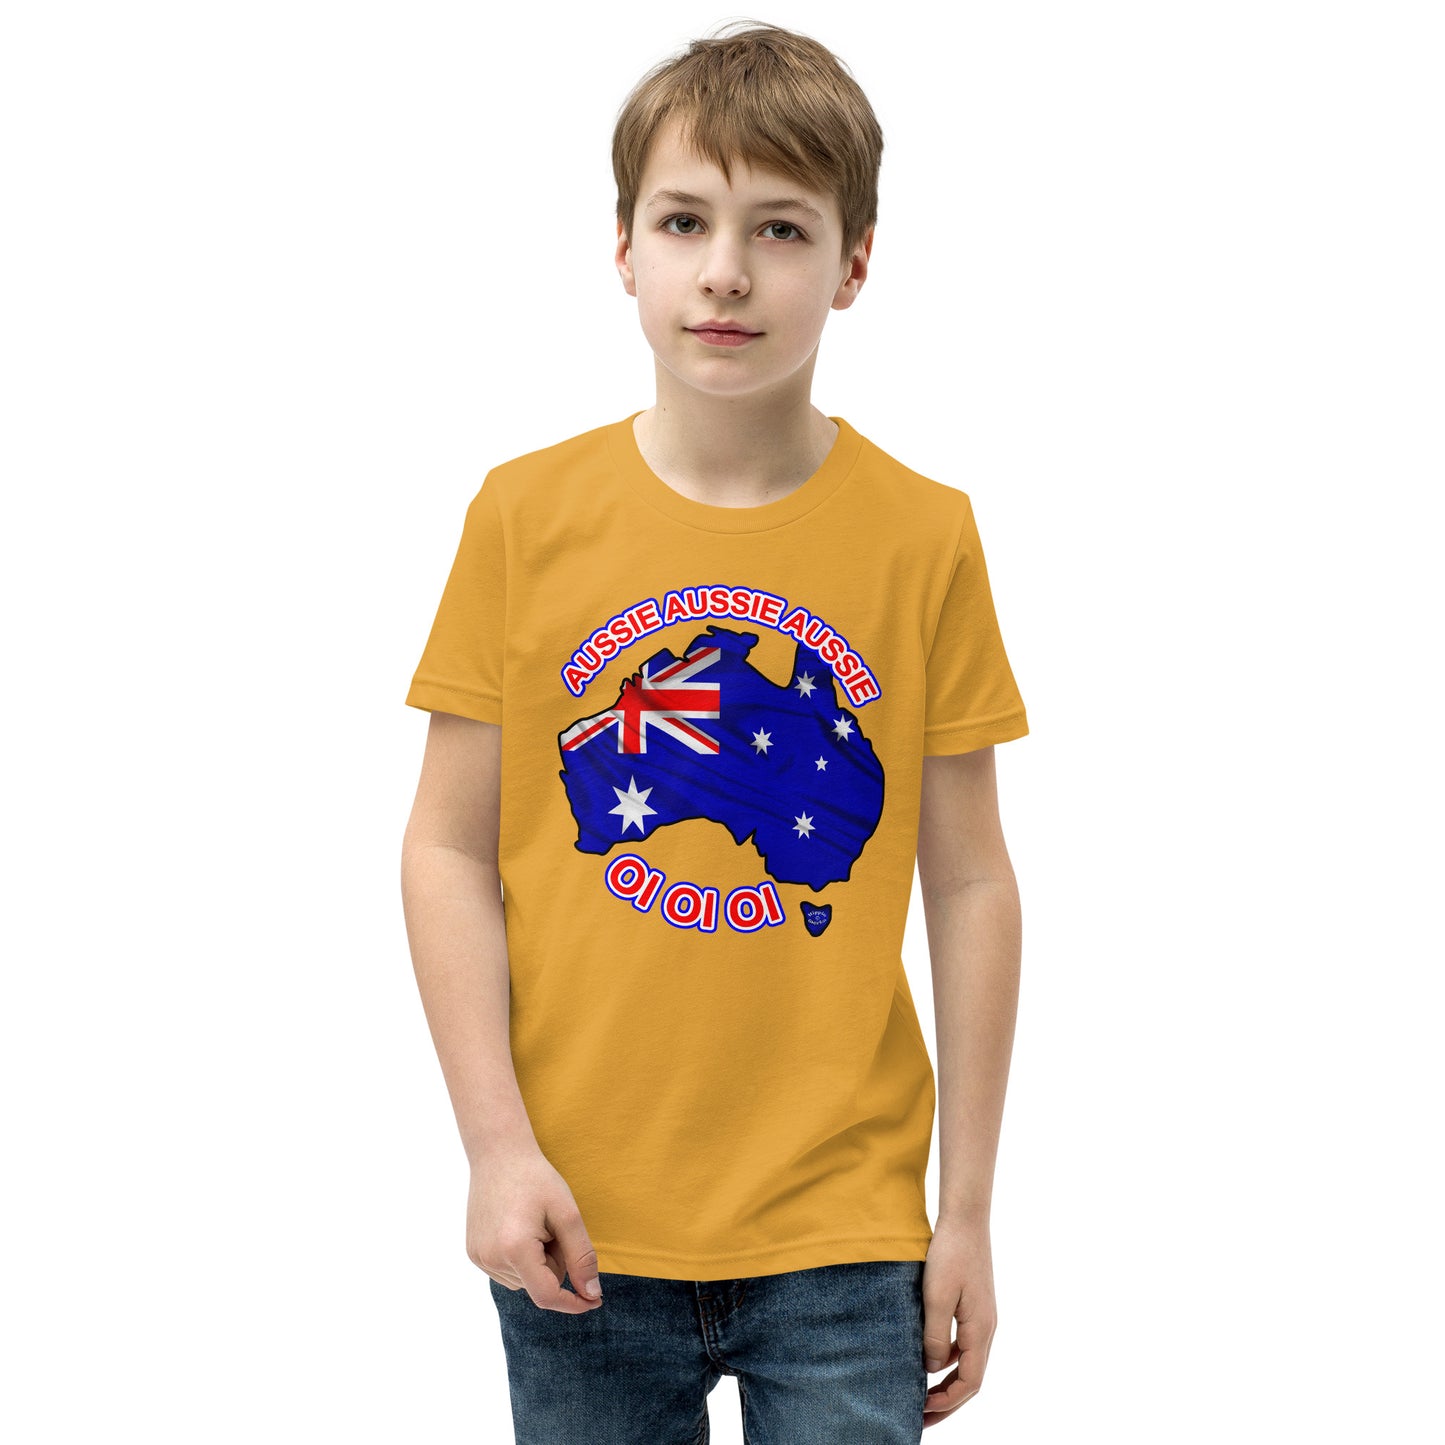 "Aussie Aussie Aussie Flag Map" Youth Short Sleeve T-Shirt